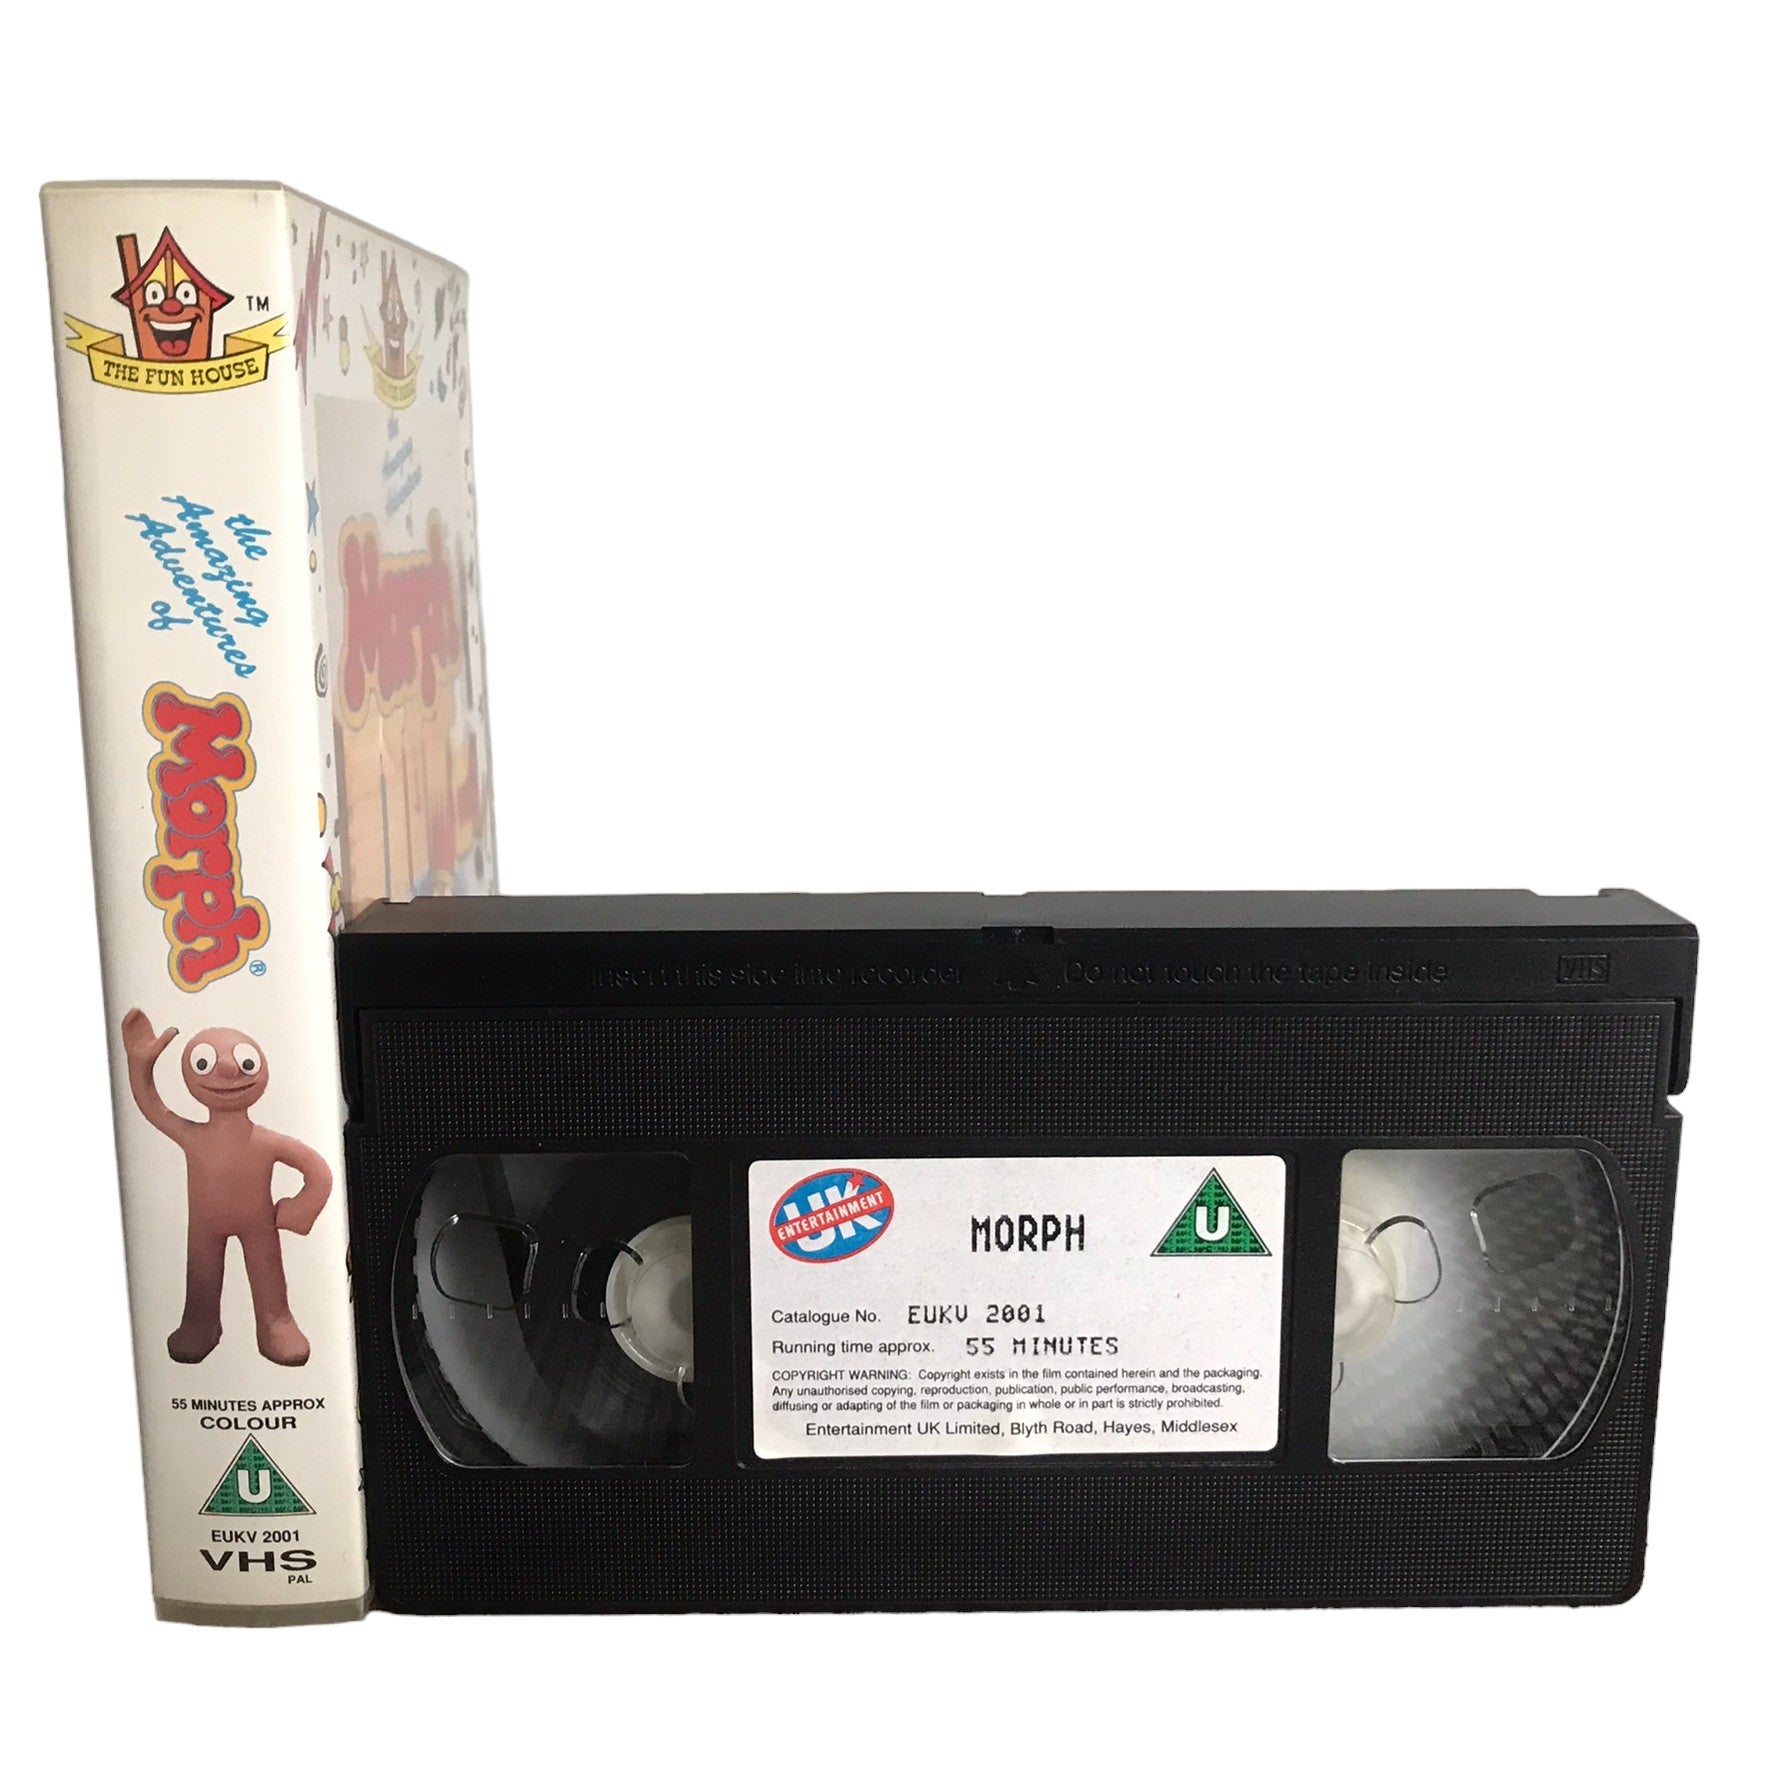 Morph - Merlin Crossingham - UK Entertainment - Childrens - Pal - VHS-